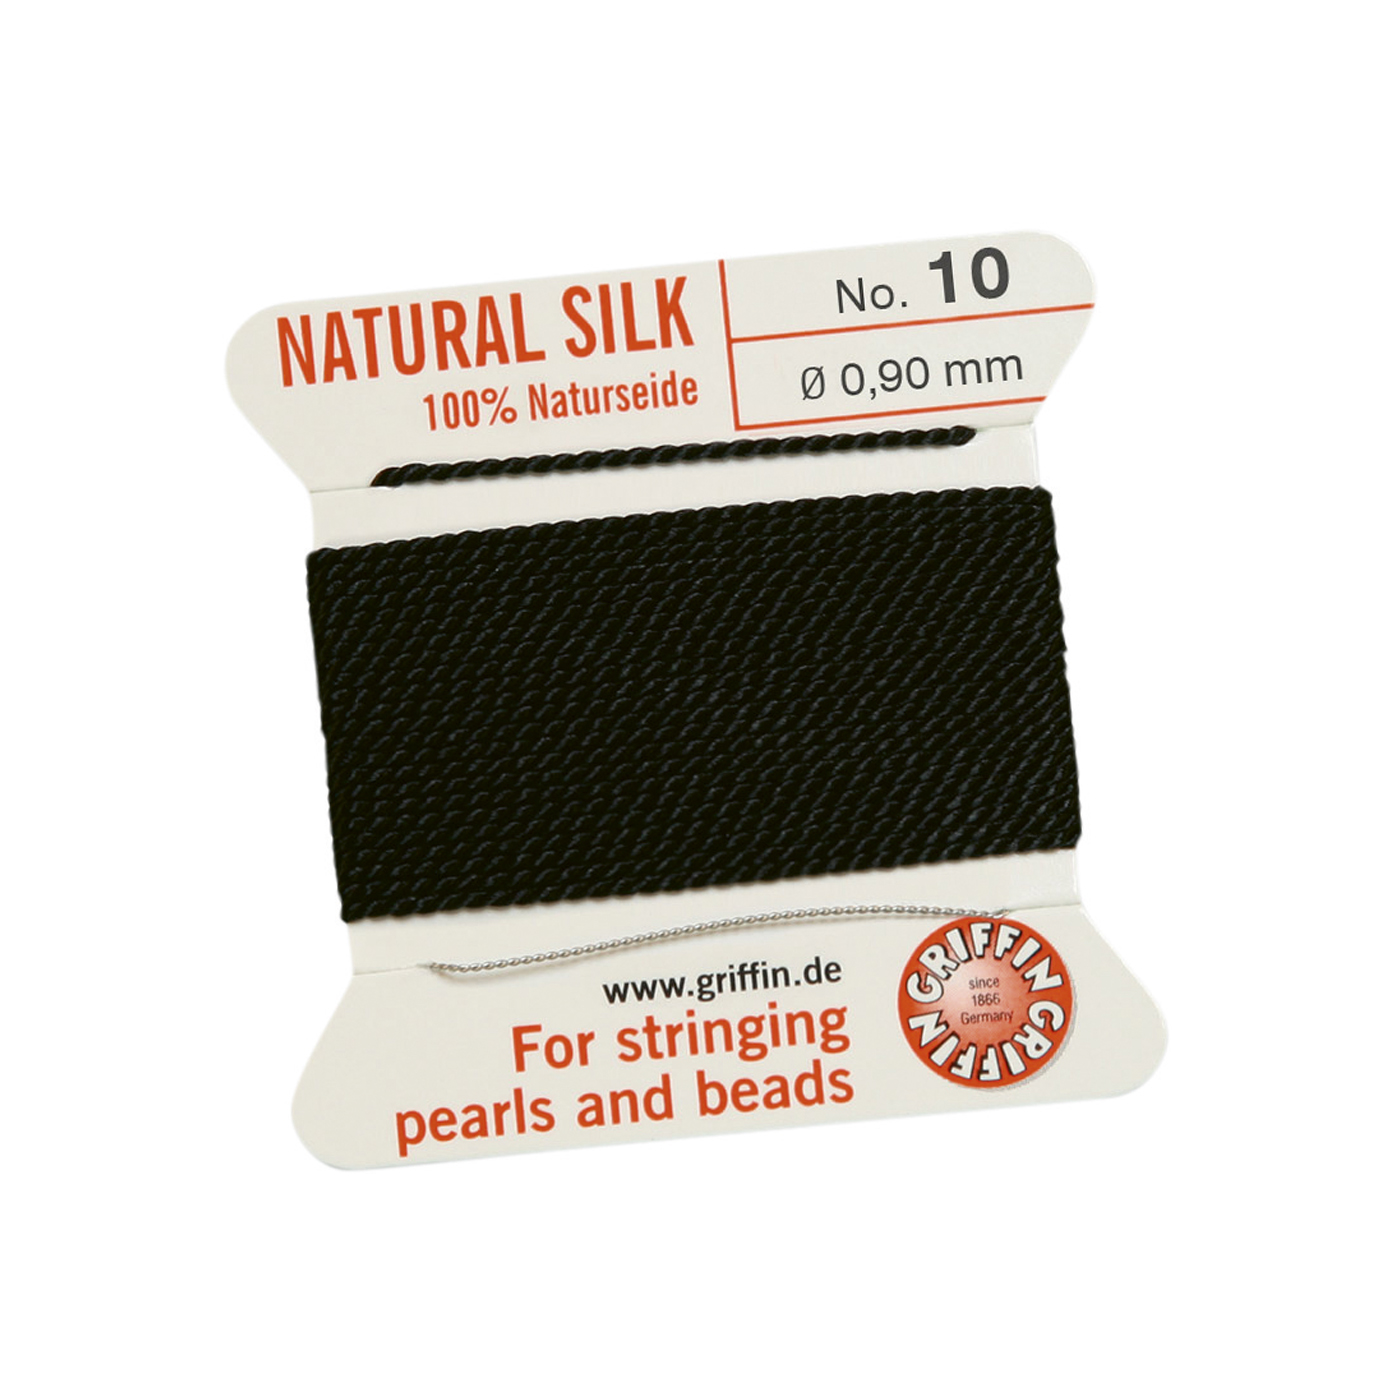 Bead Cord 100% Natural Silk, Black, No. 10 - 2 m